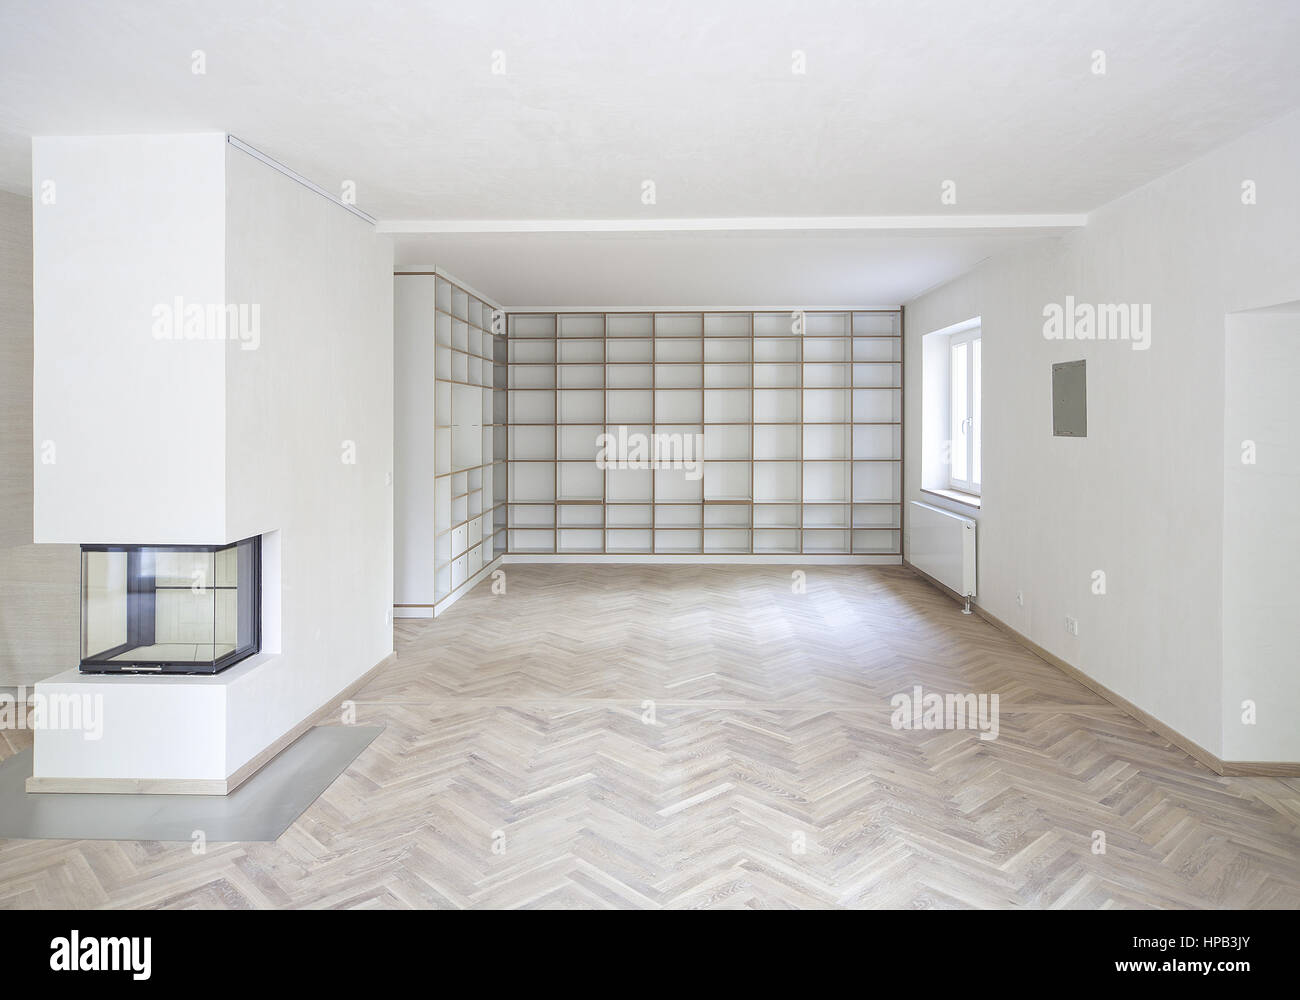 Leerer weisser Wohnraum mit Parkettboden und Regalwand Stock Photo